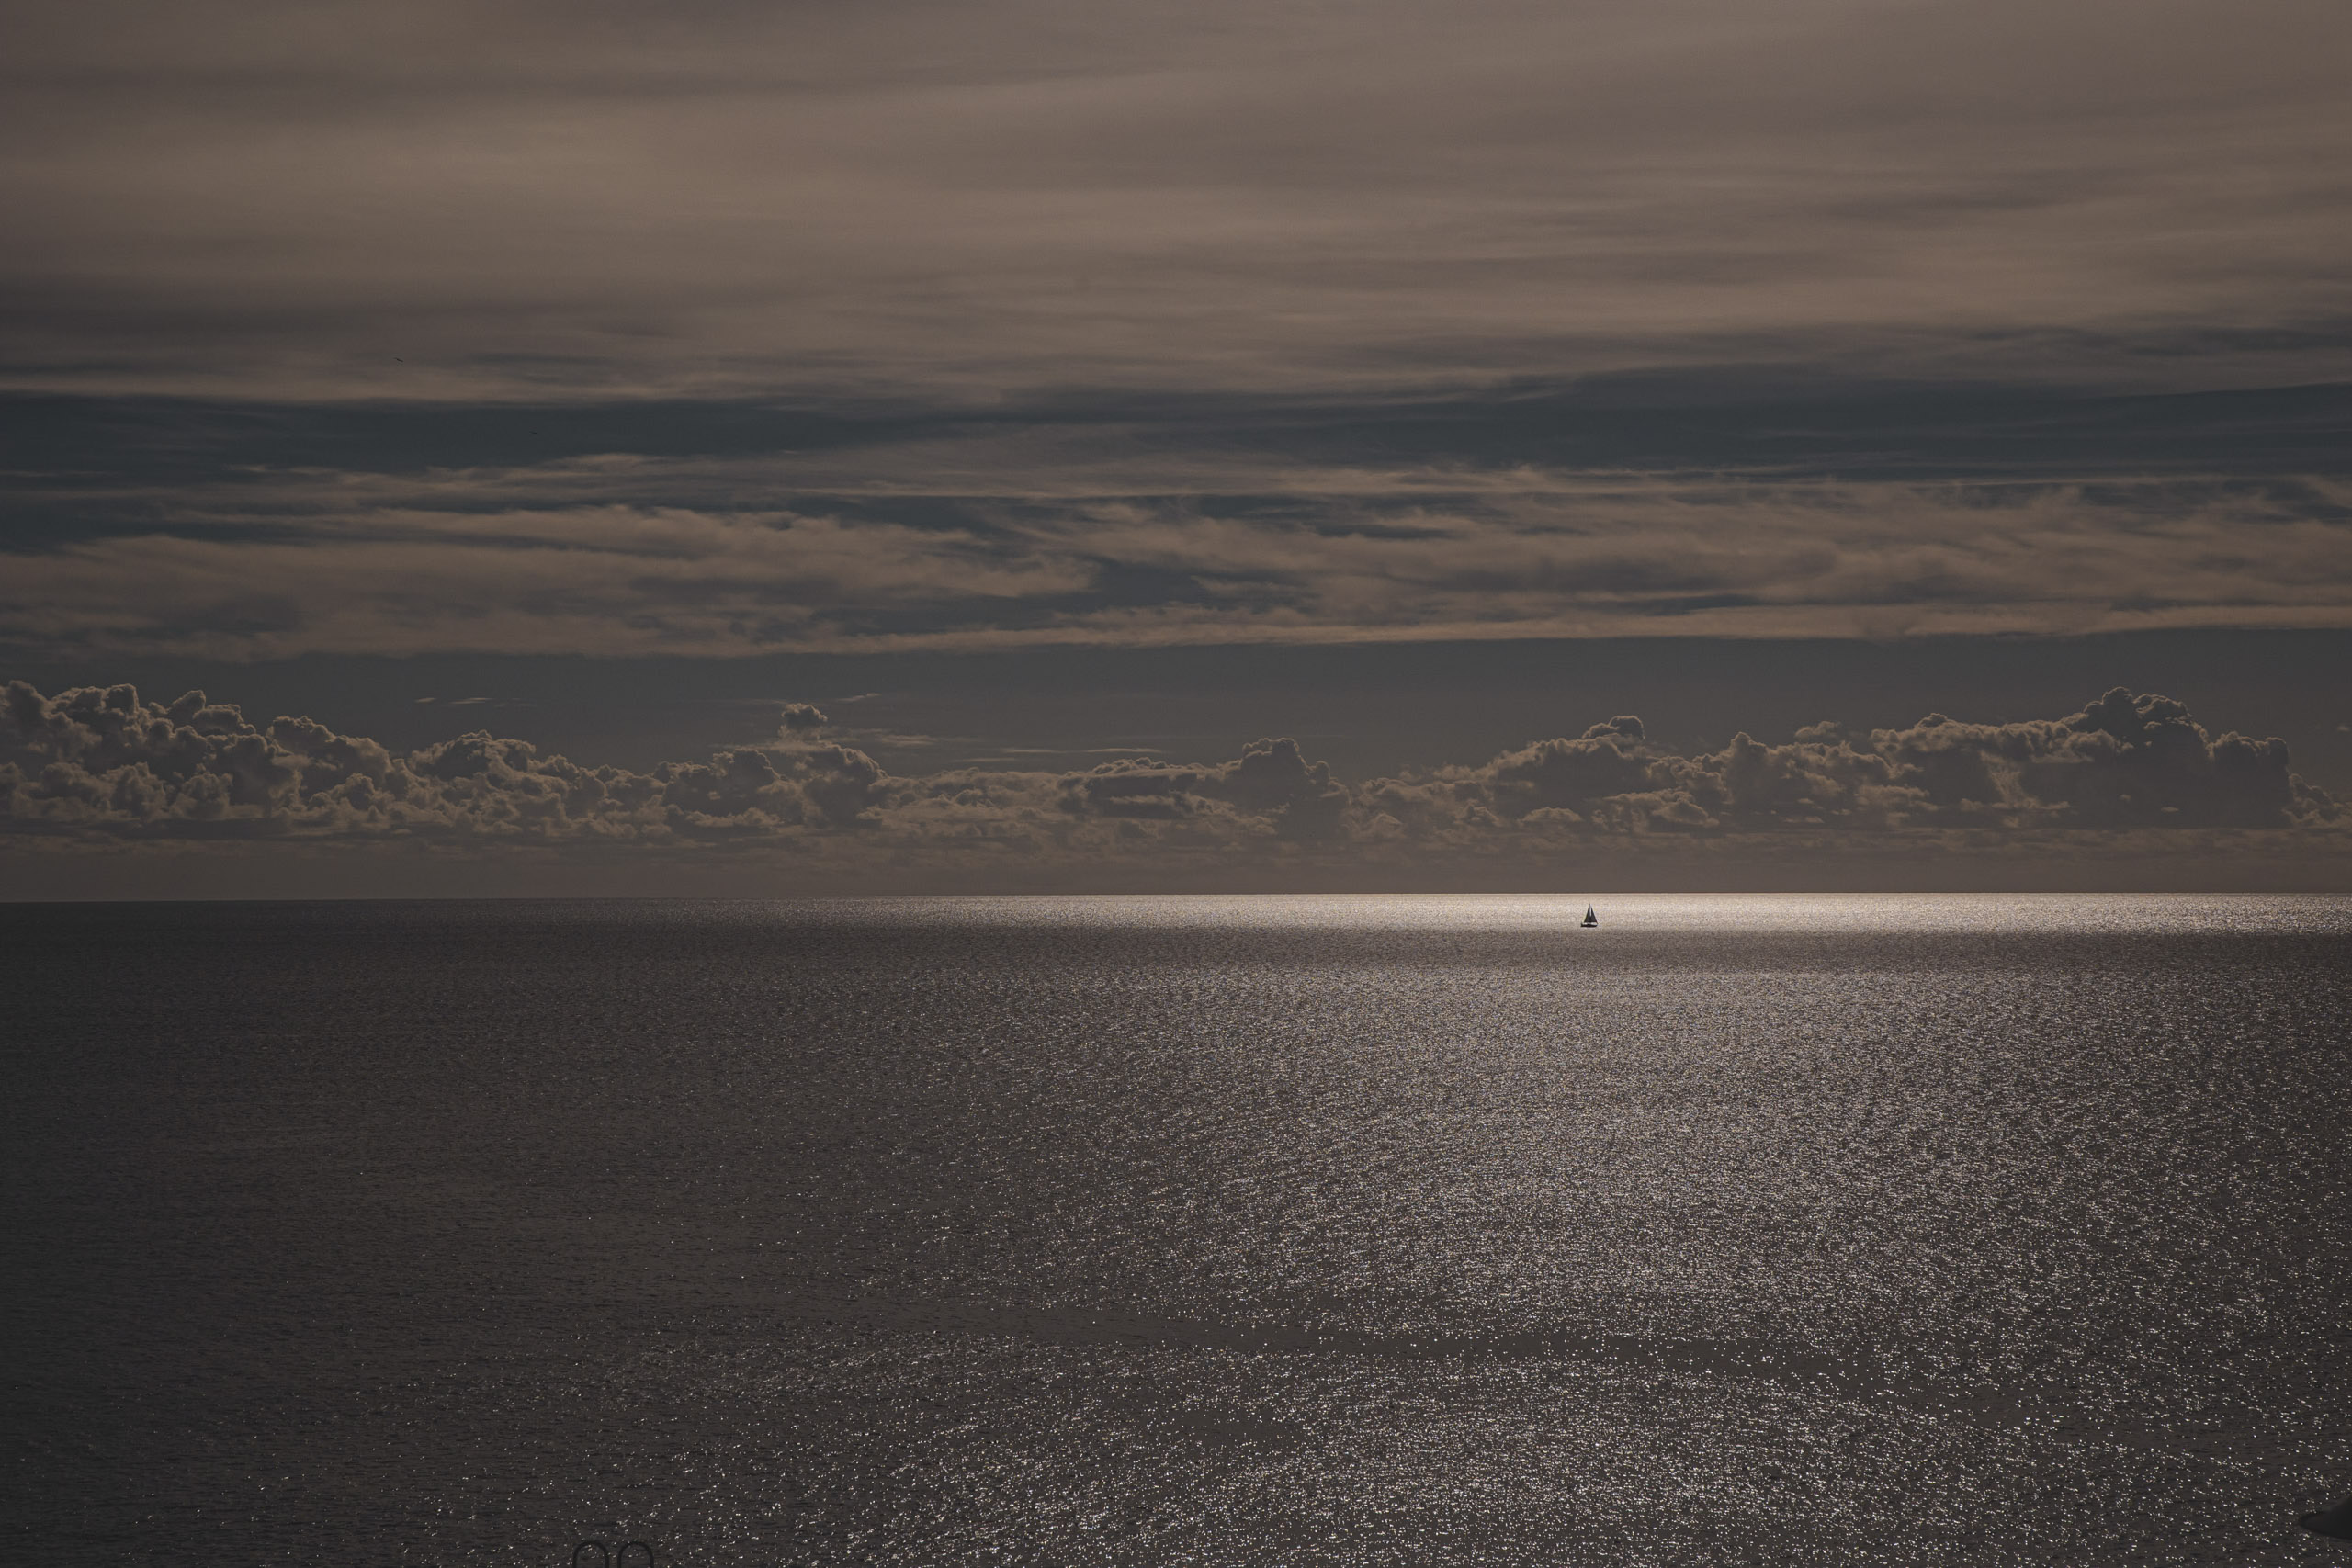 Eine ruhige Meereslandschaft mit einer leuchtenden Wasseroberfläche unter einem bewölkten Himmel und einem entfernten Segelboot in der Mitte der Ansicht. © Fotografie Tomas Rodriguez